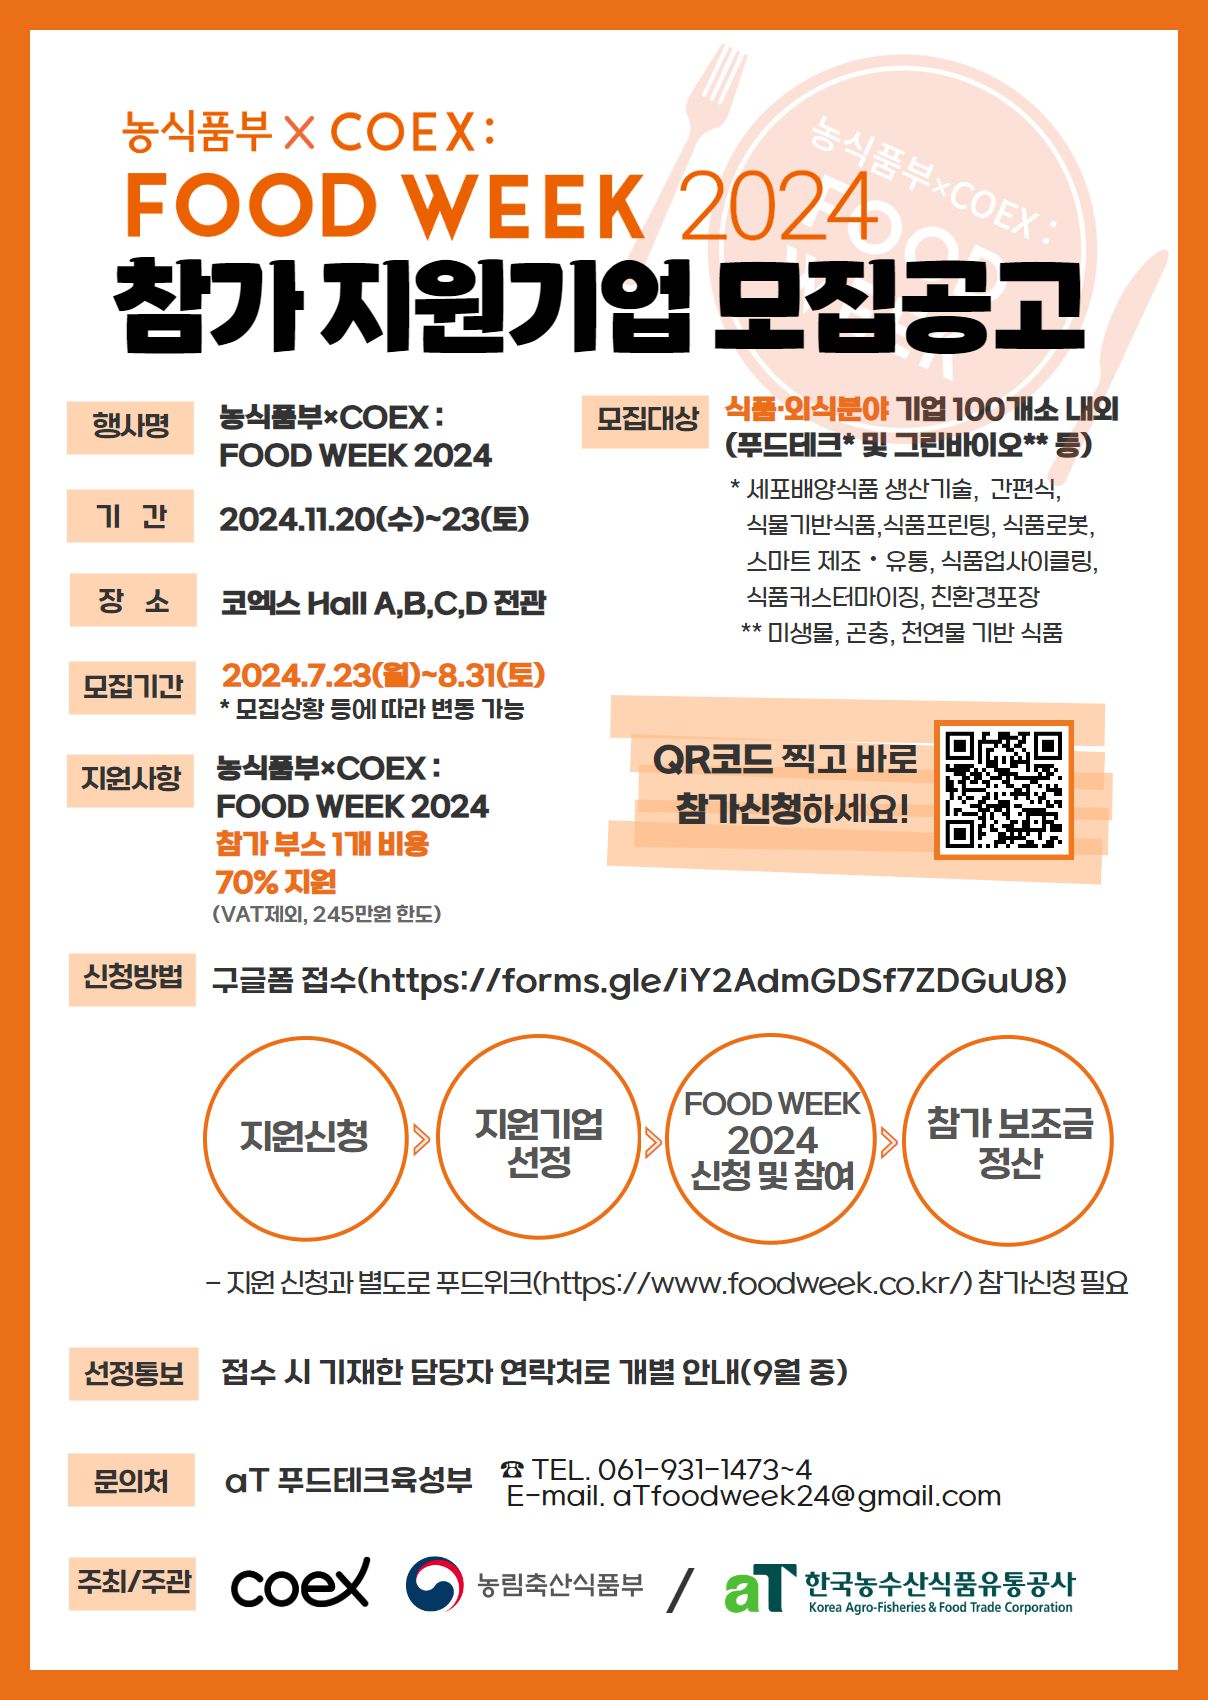 「농식품부×COEX : FOOD WEEK 2024」 참가 지원기업 모집공고 팝업 요청 이미지